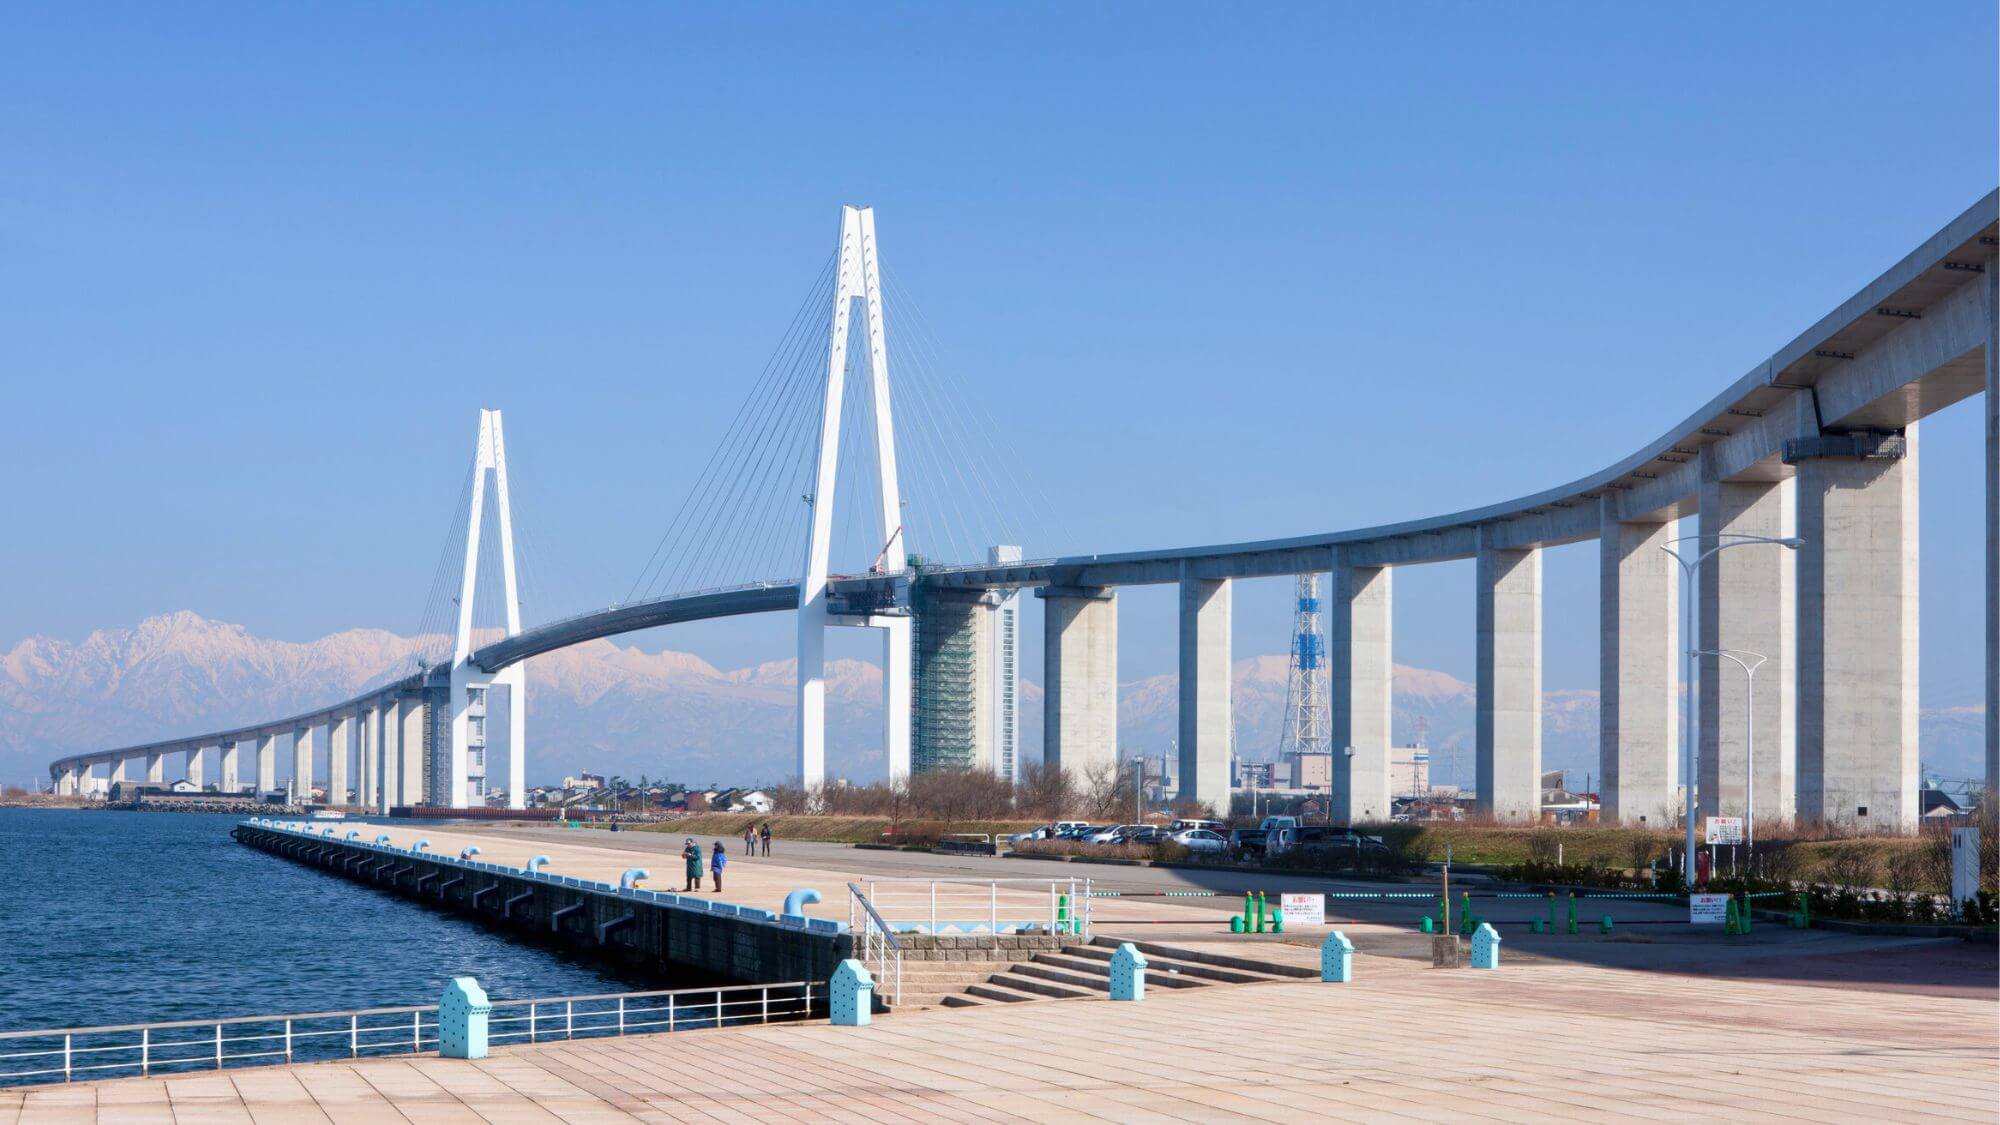 【新湊大橋】GYU-YA VILLAよりお車で30分。歩いて渡れる、日本海側最大級の斜張橋です